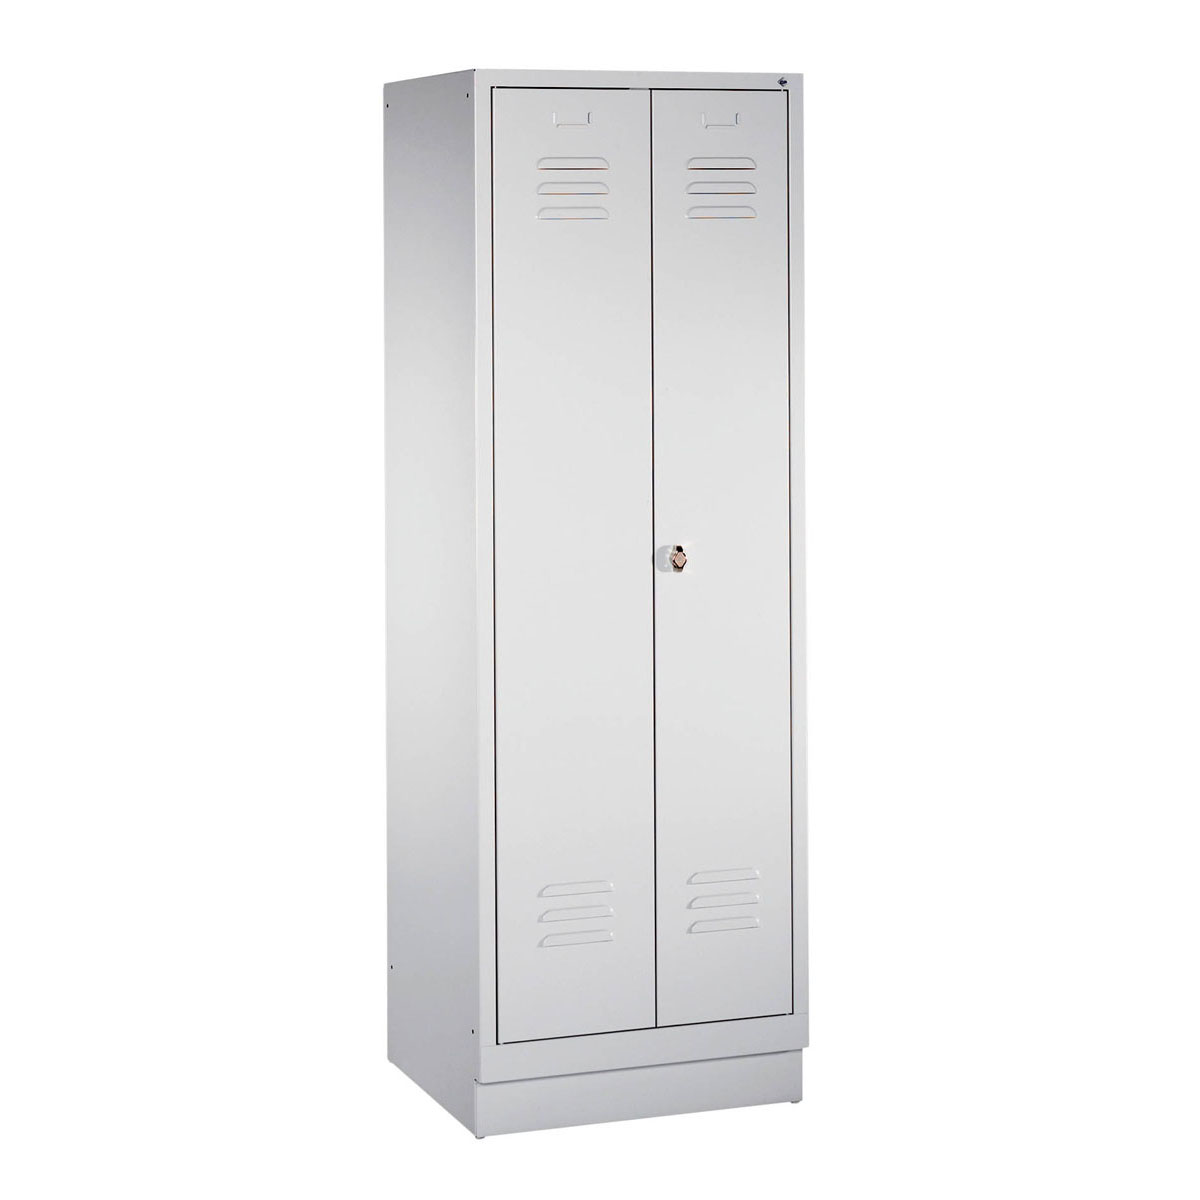 Garderobenschrank mit Sockel, zueinander schlagende Türen, ArtNr.: CP8022